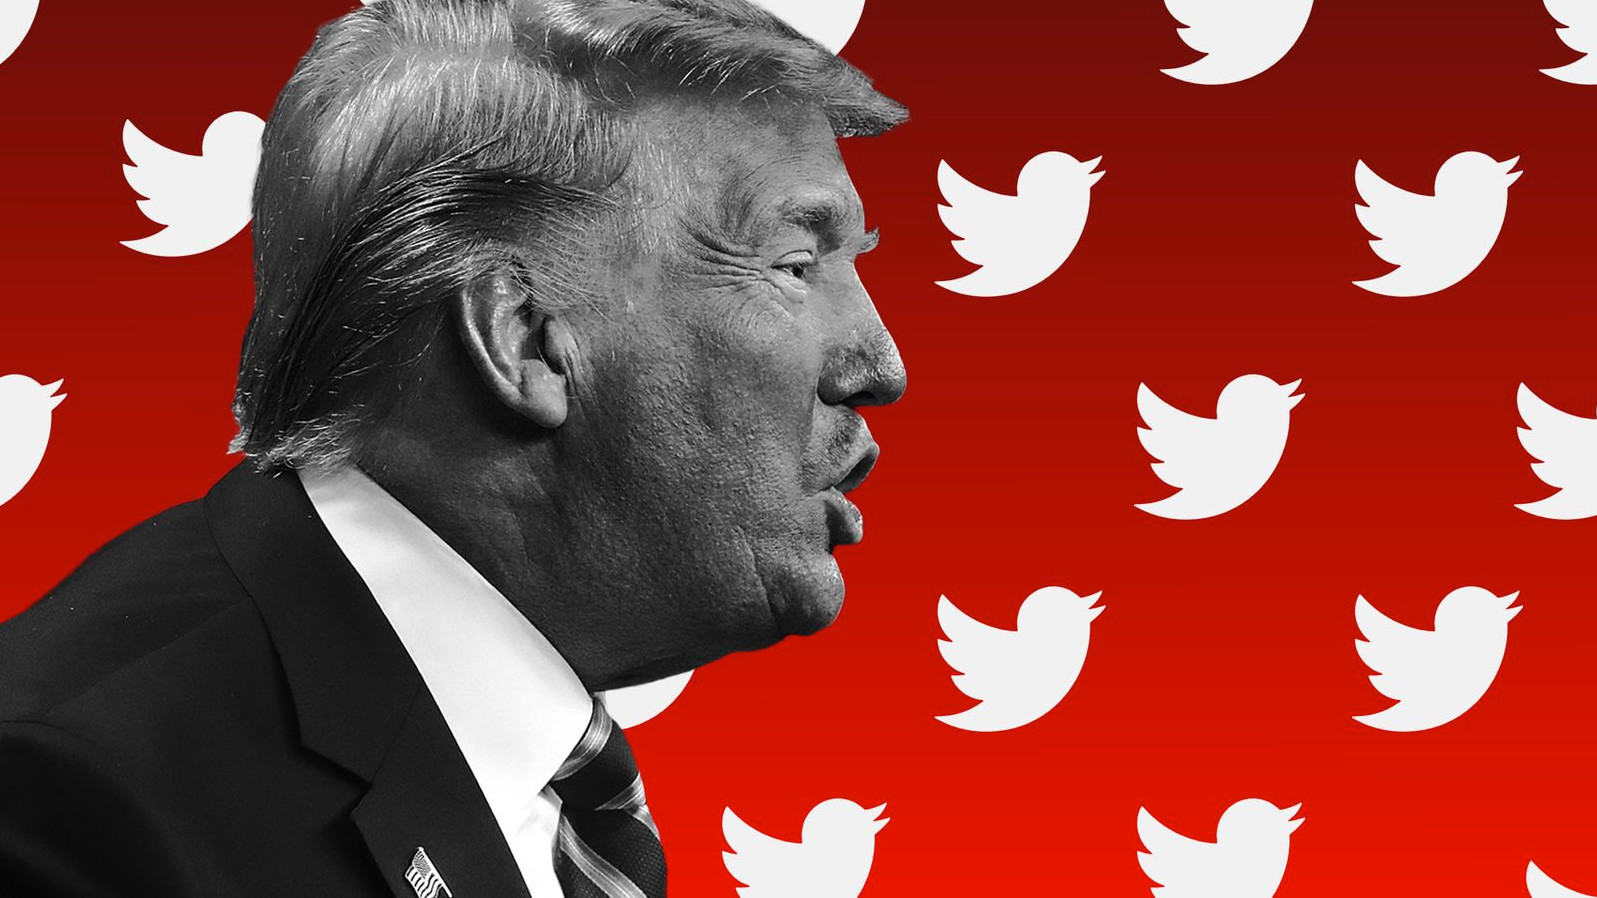 Πέθανε ο Ντόλαντ Τραμπ; – Οι χρήστες του Twitter δοκιμάζουν τον νέο αλγόριθμο του Μασκ για τα fake news